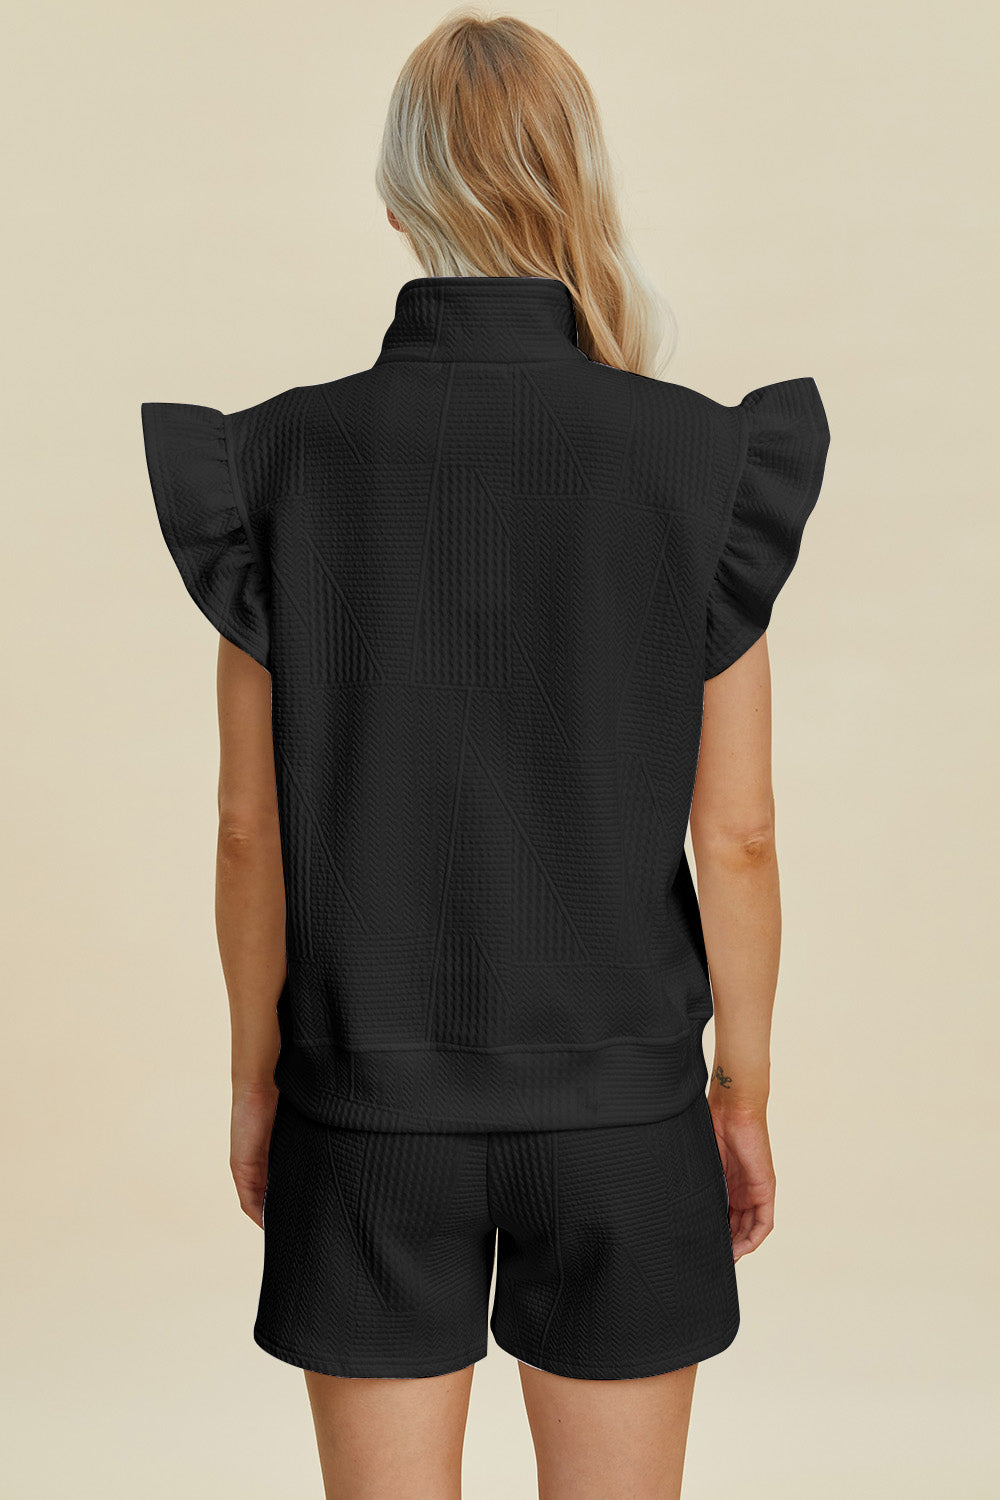 TEEK - Ruffled Textured Sleeve Top Shorts Set SET TEEK Trend   